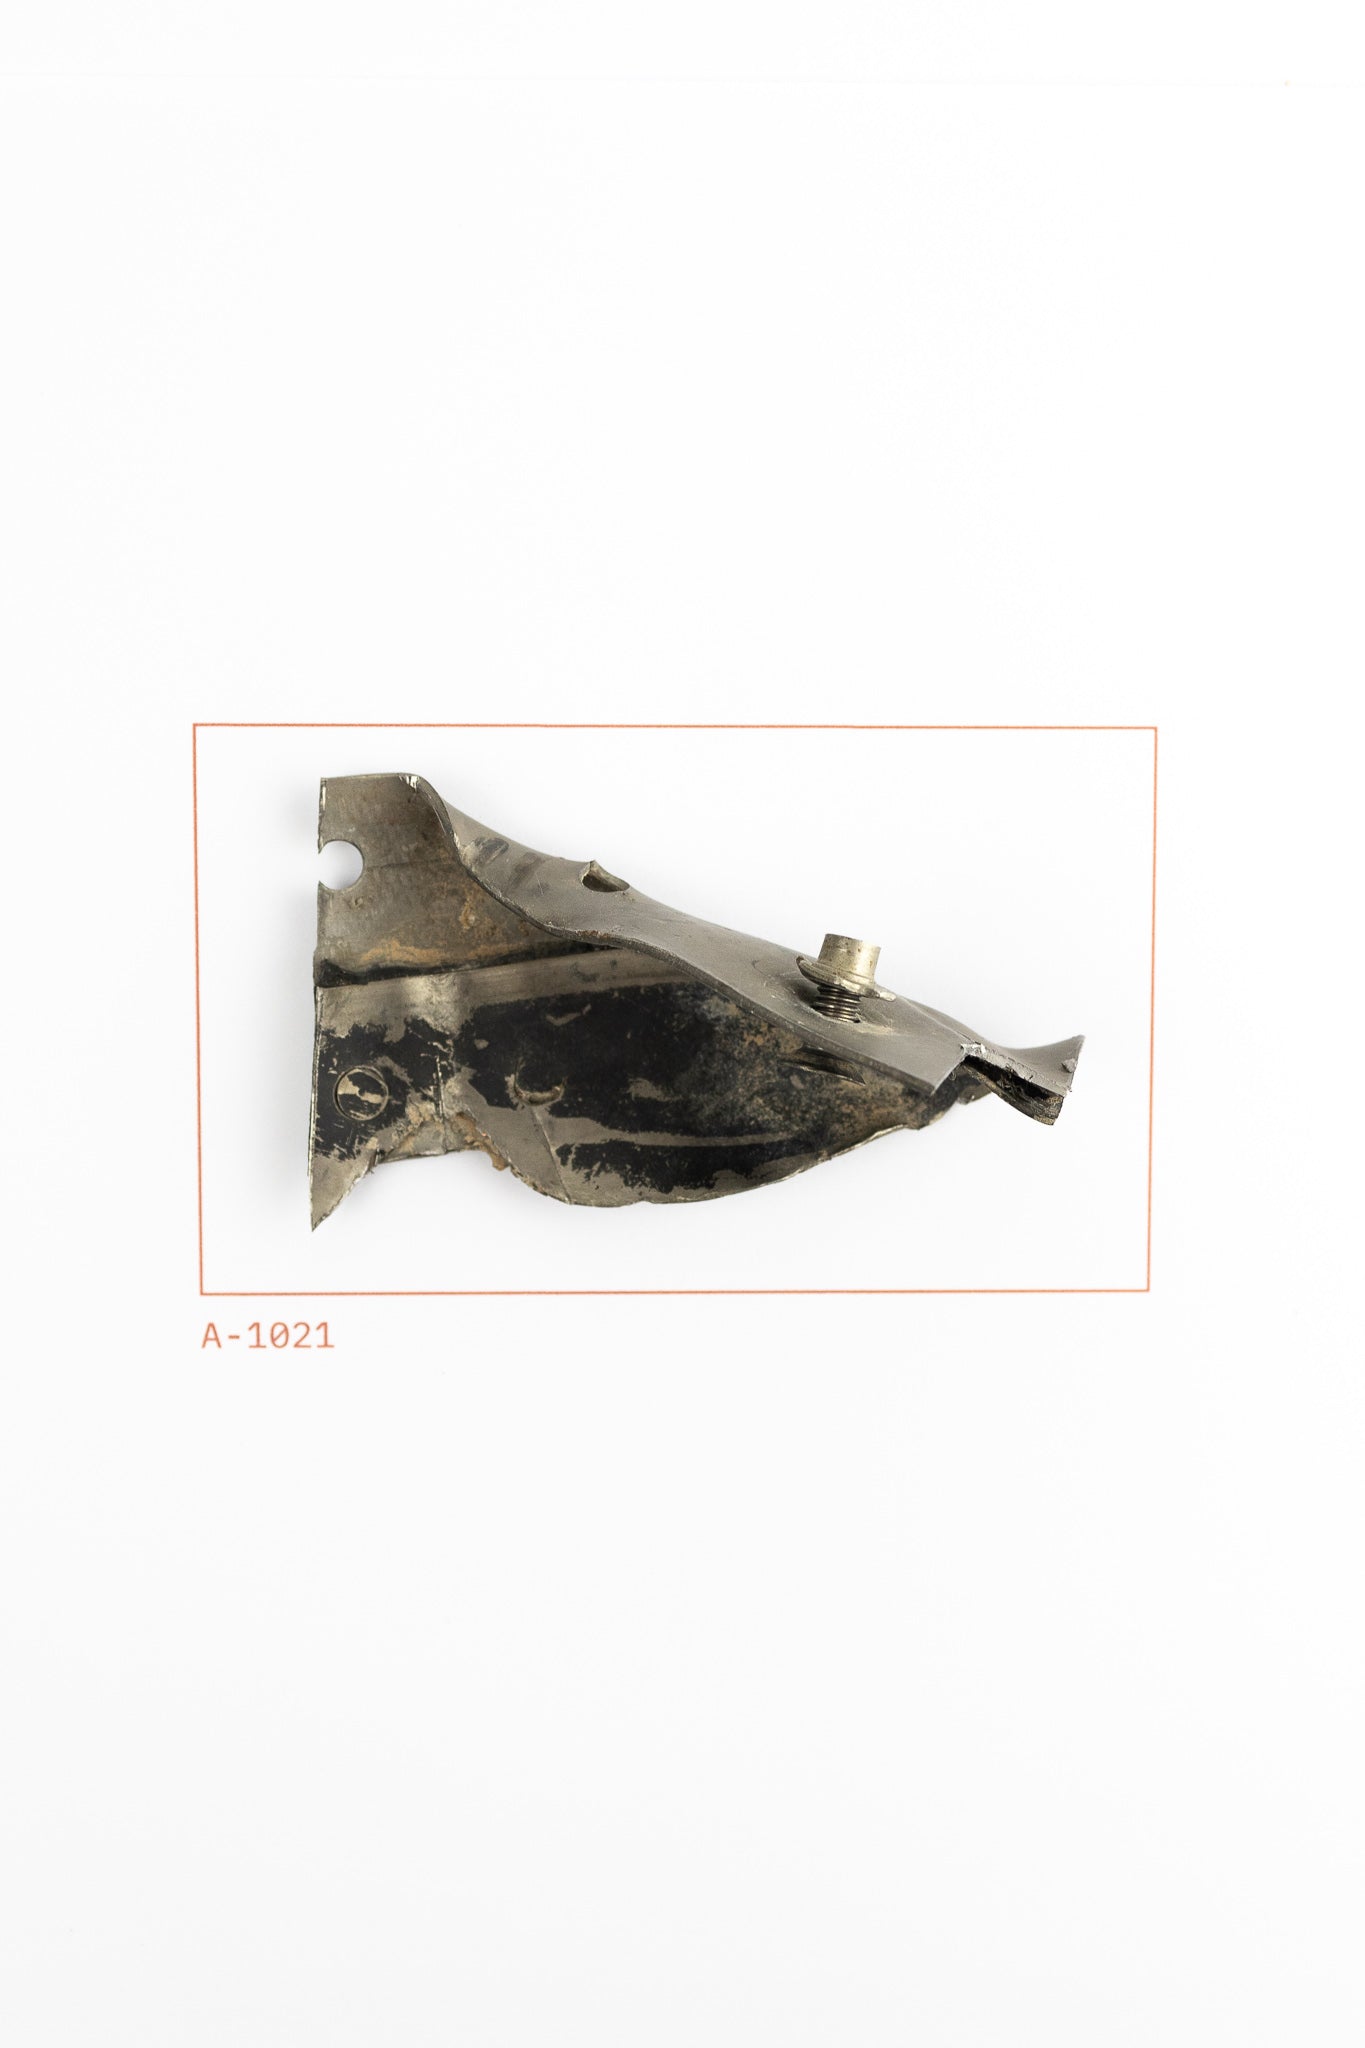 SR-71 Blackbird Wreckage (Item # A-1021)